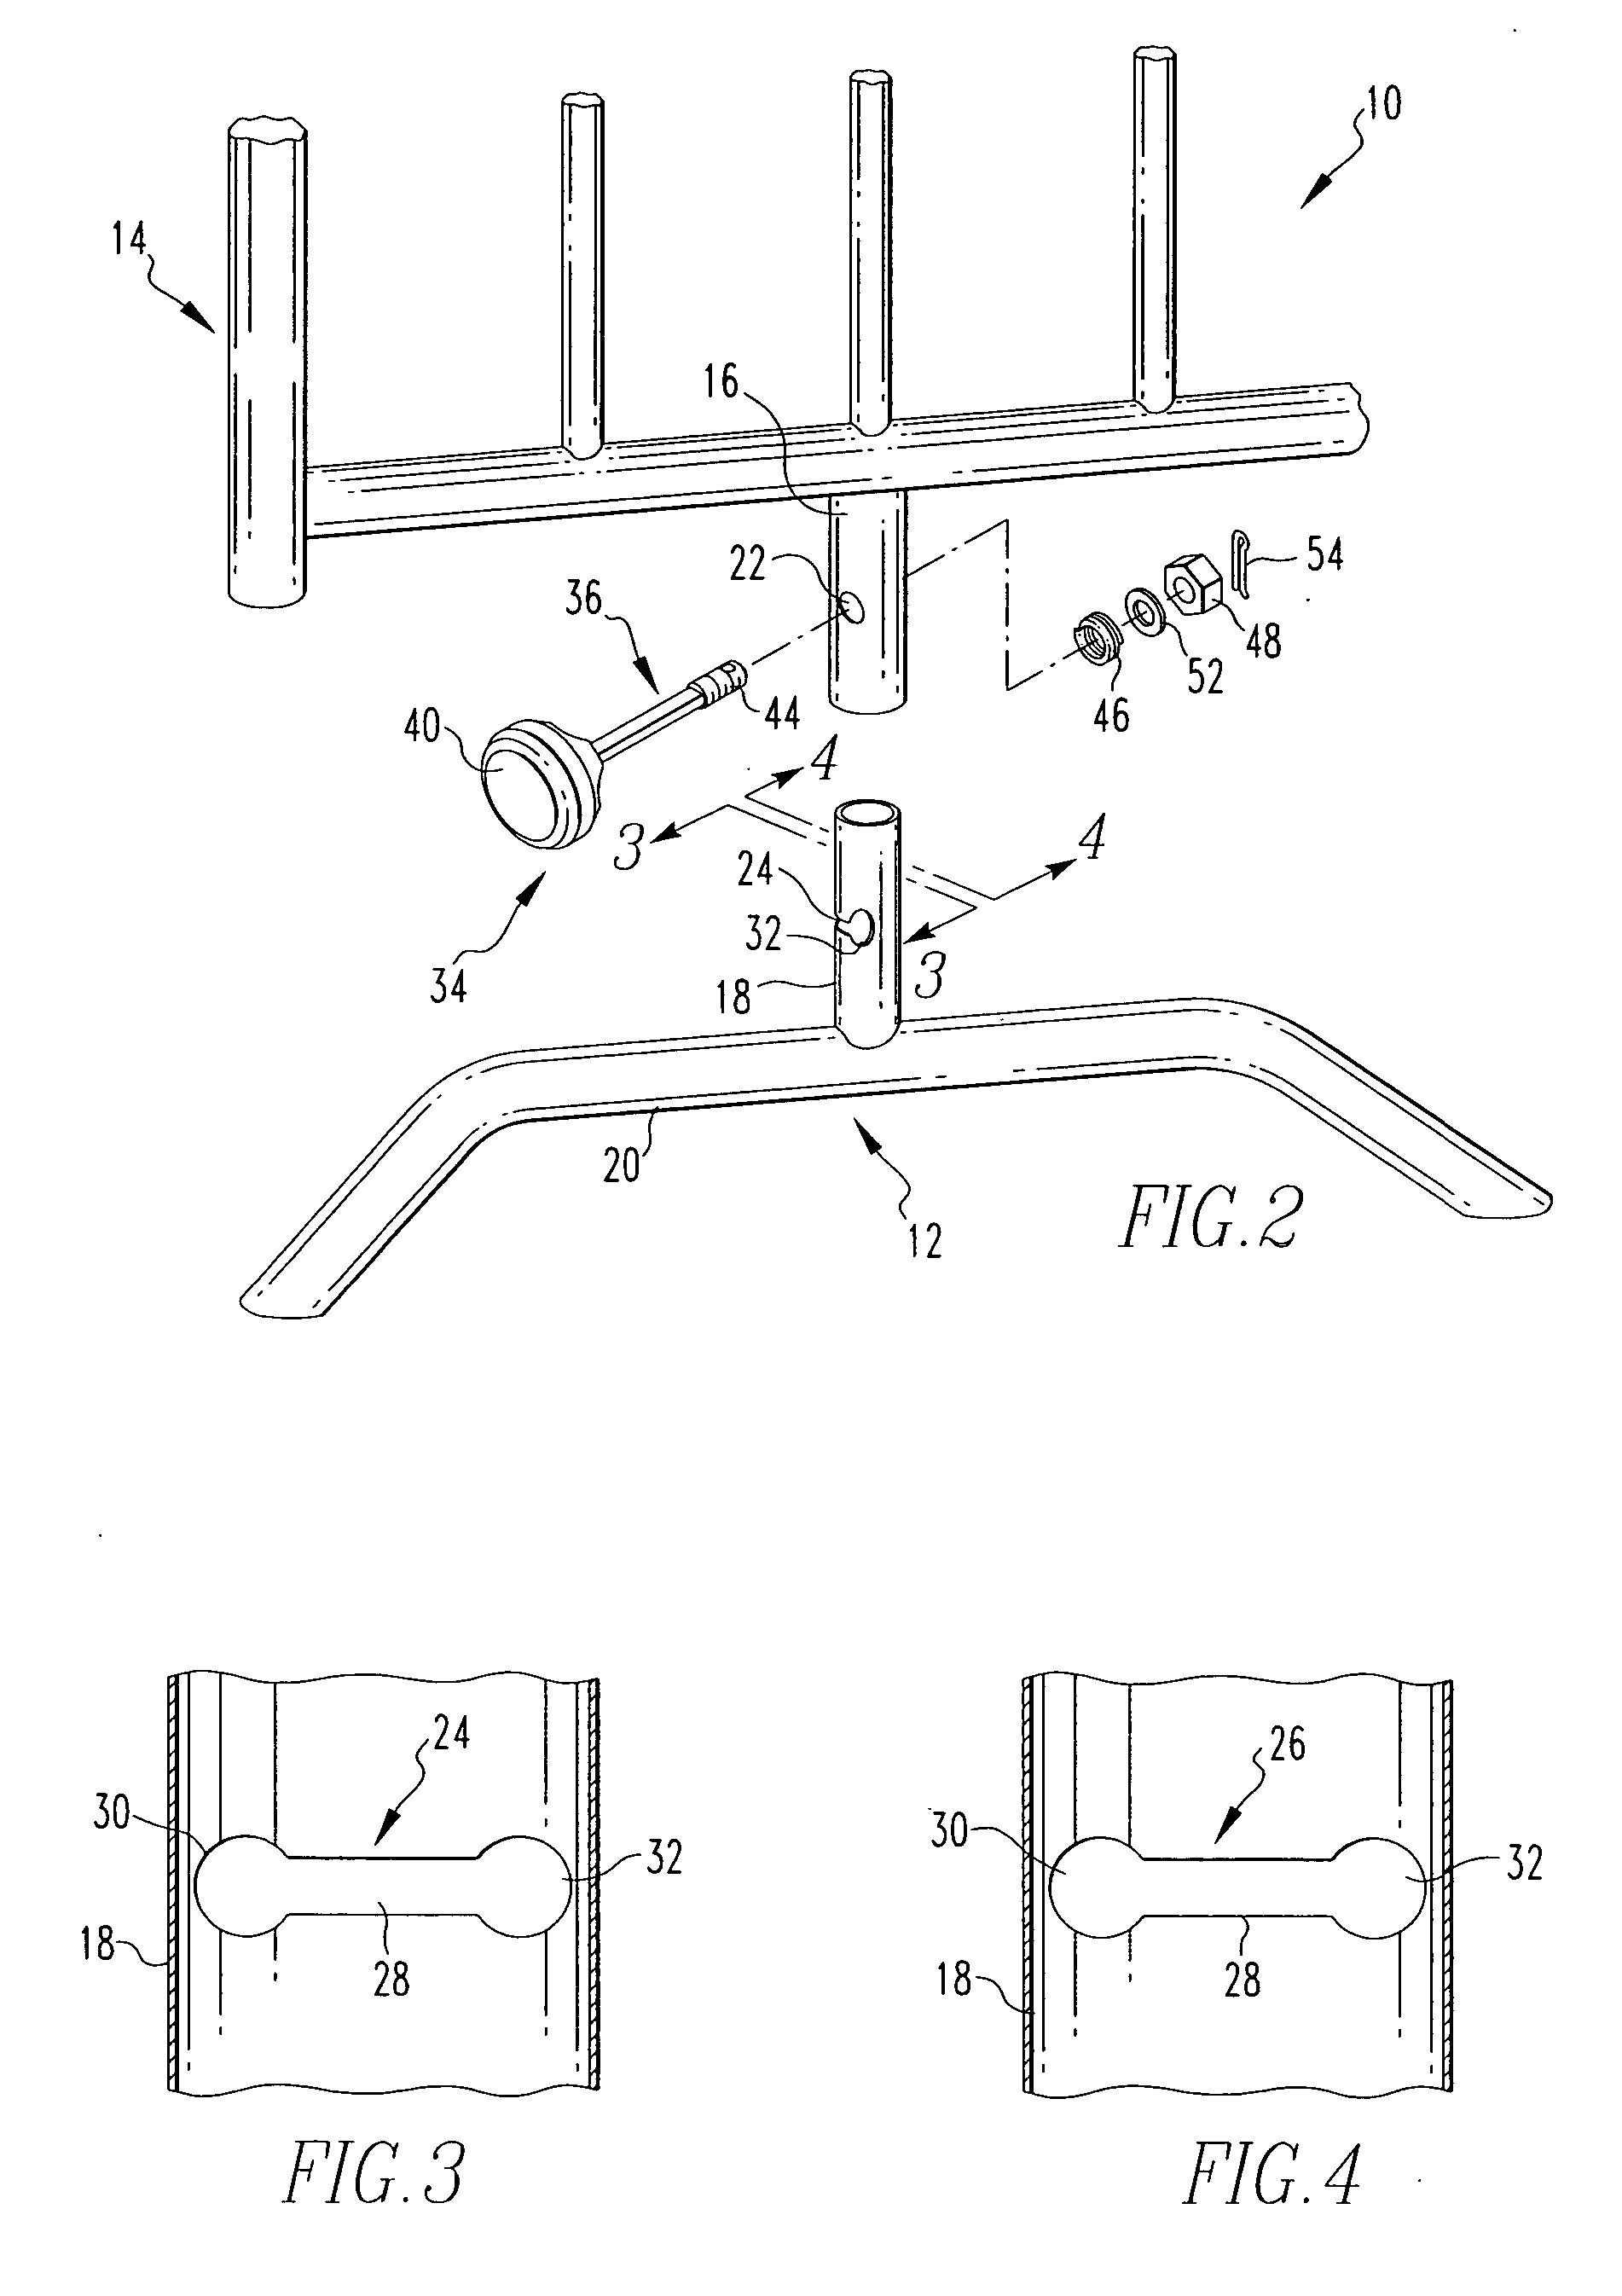 Pin locking mechanism